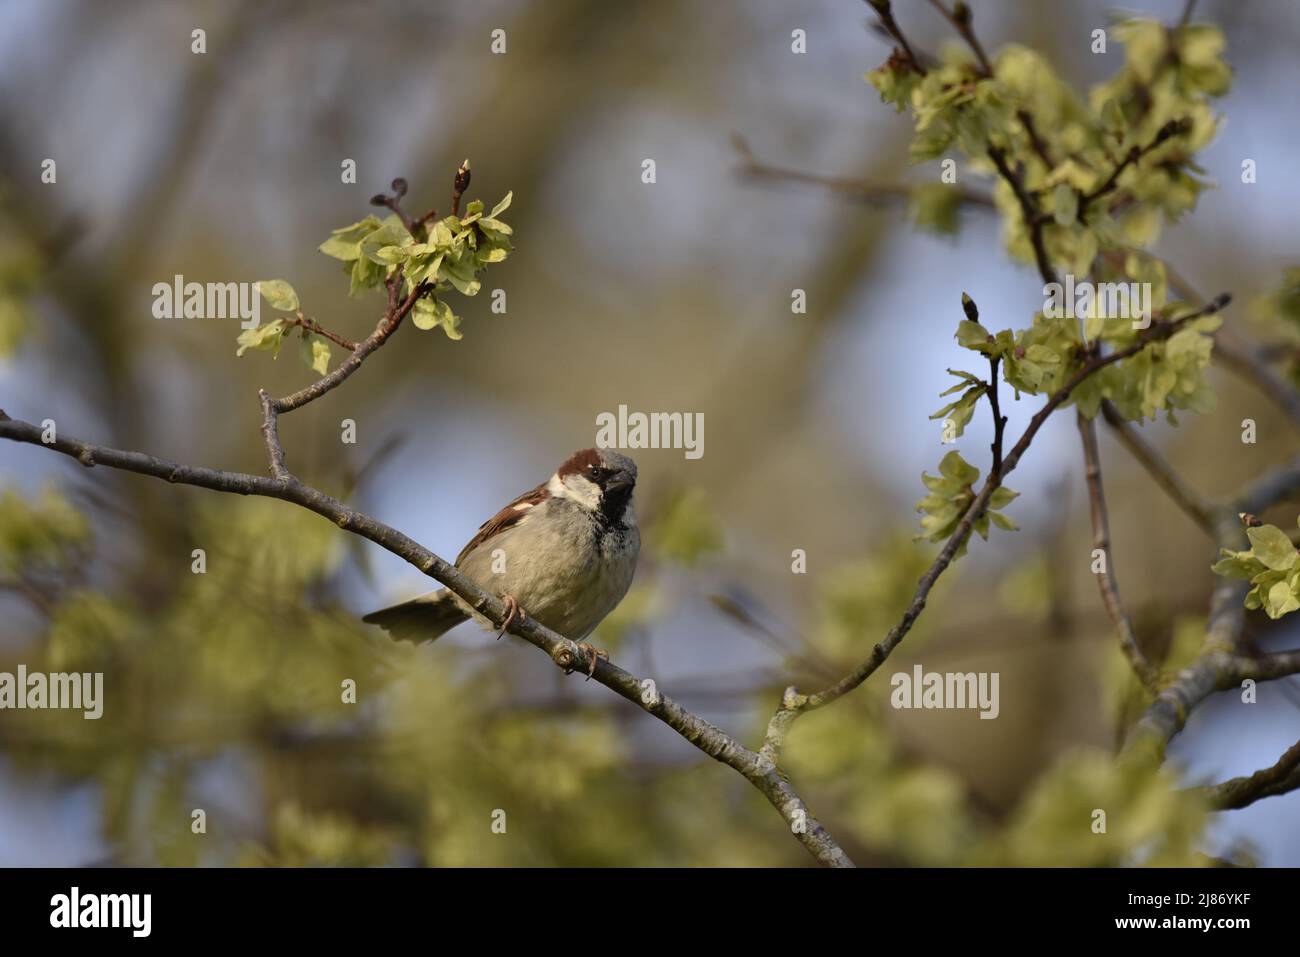 Männlicher Haussparrow (Passer domesticus), der auf einem diagonalen Zweig im Vordergrund des Bildes thront, der Kamera zugewandt, Augen in Sonne gegen Himmel hervorgehoben Stockfoto